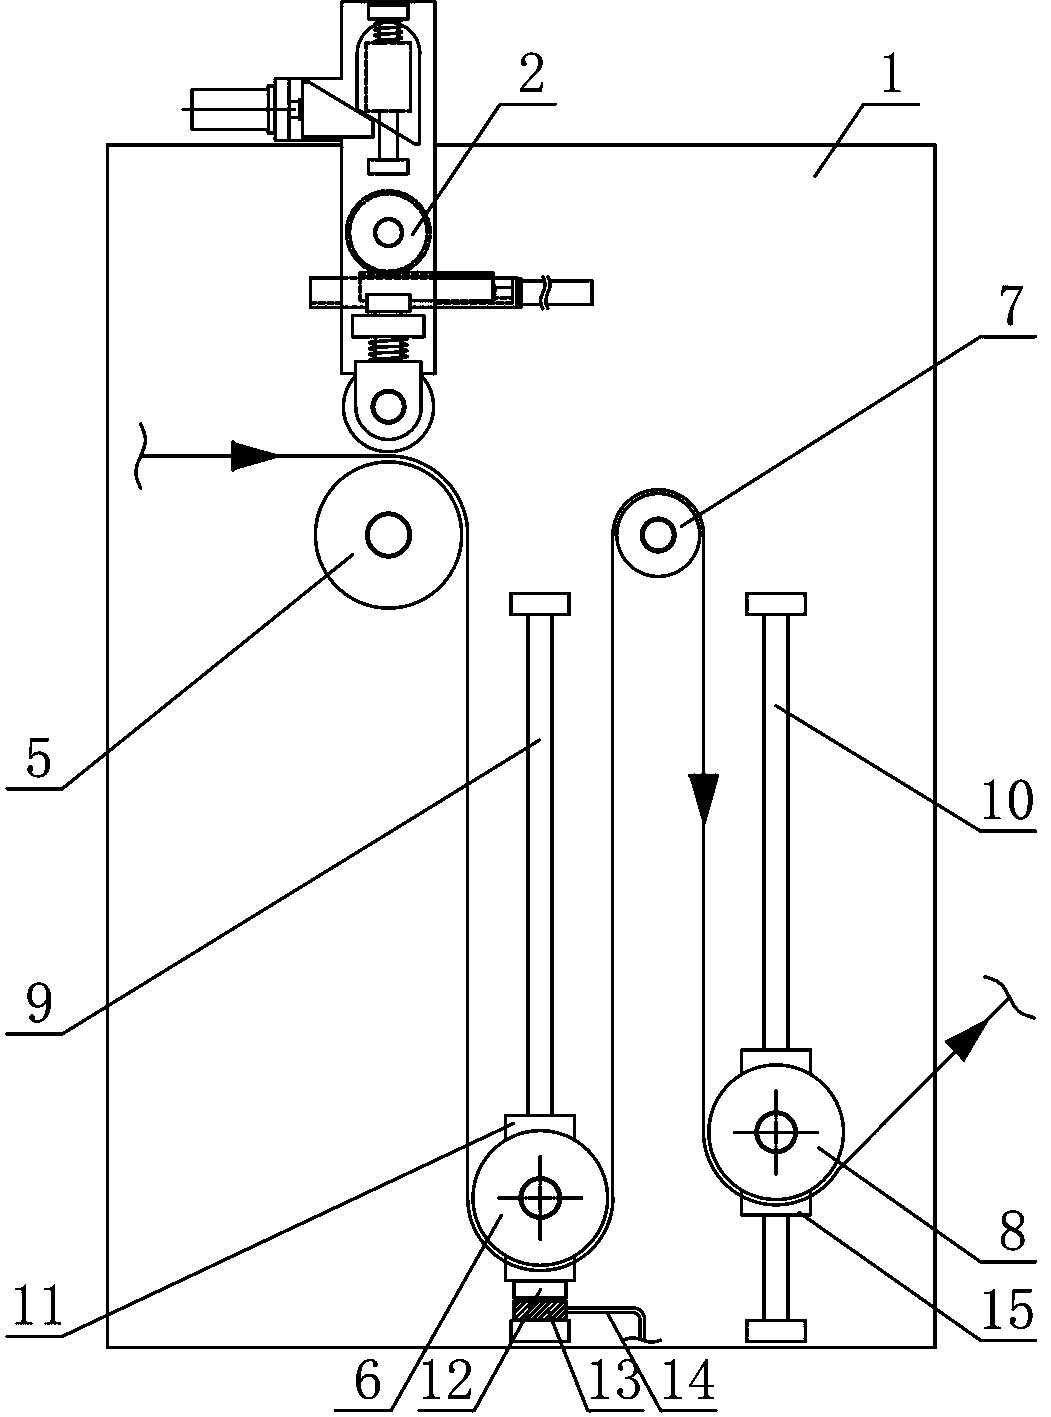 Yarn variable speed winding mechanism